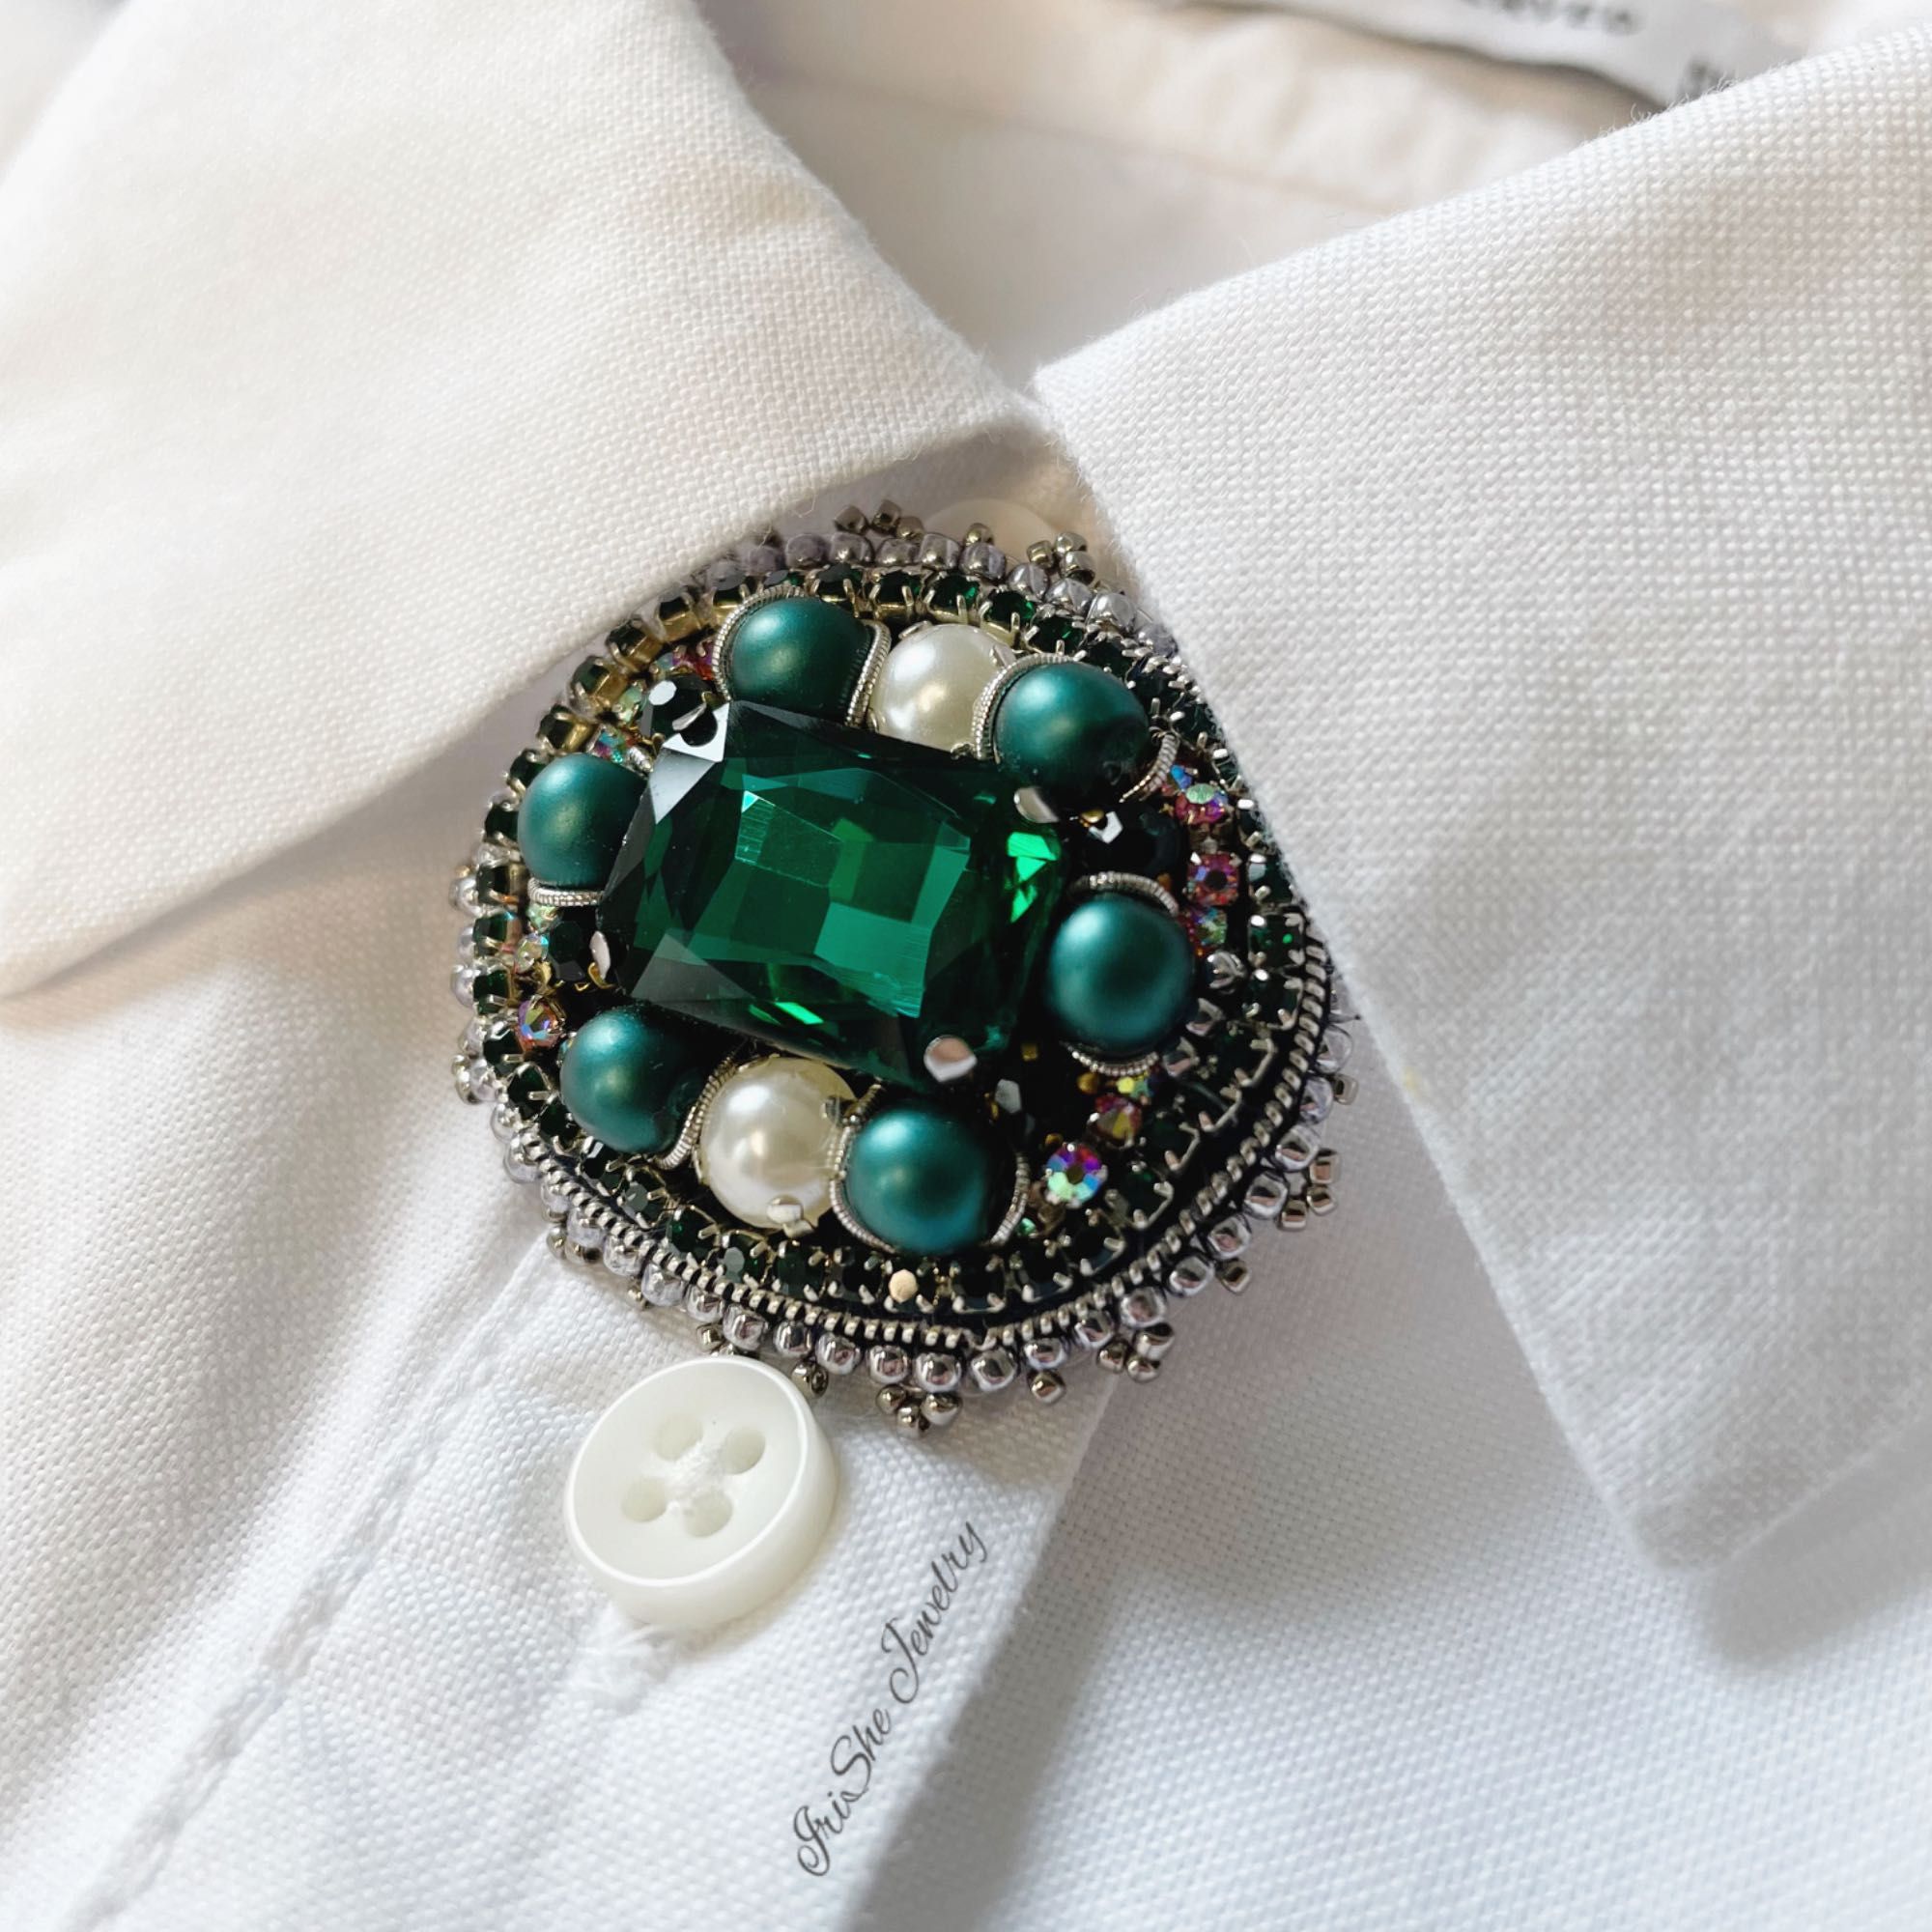 Broszka Emerald Classic handmade. Idealny  prezent na Dzień Matki